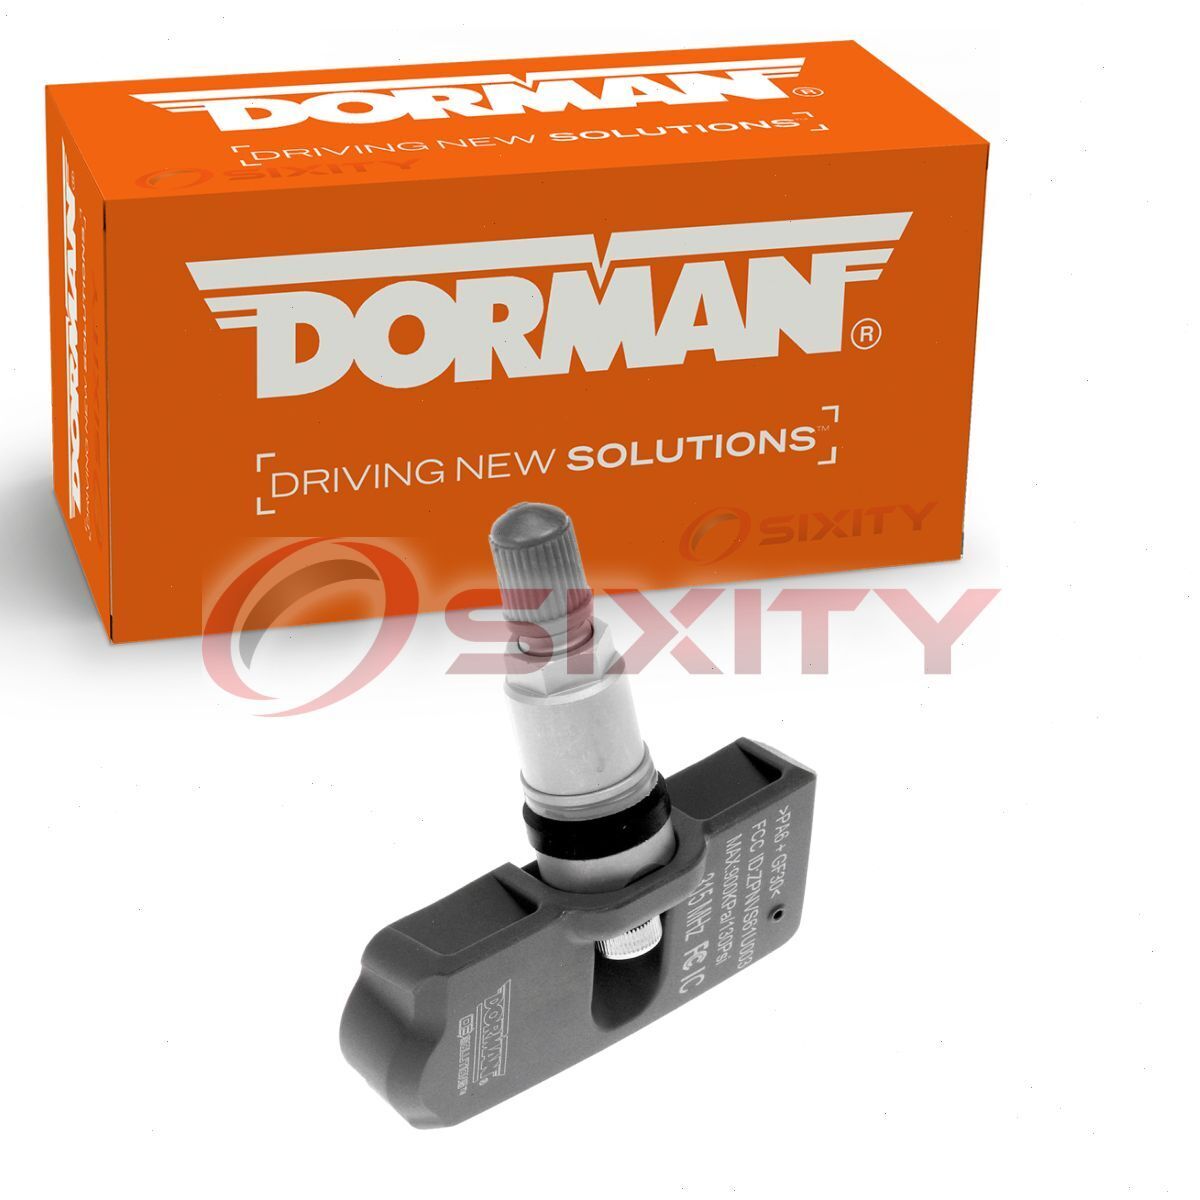 Dorman TPMS Programmable Sensor for 2005-2008 Suzuki Reno Tire Pressure fk